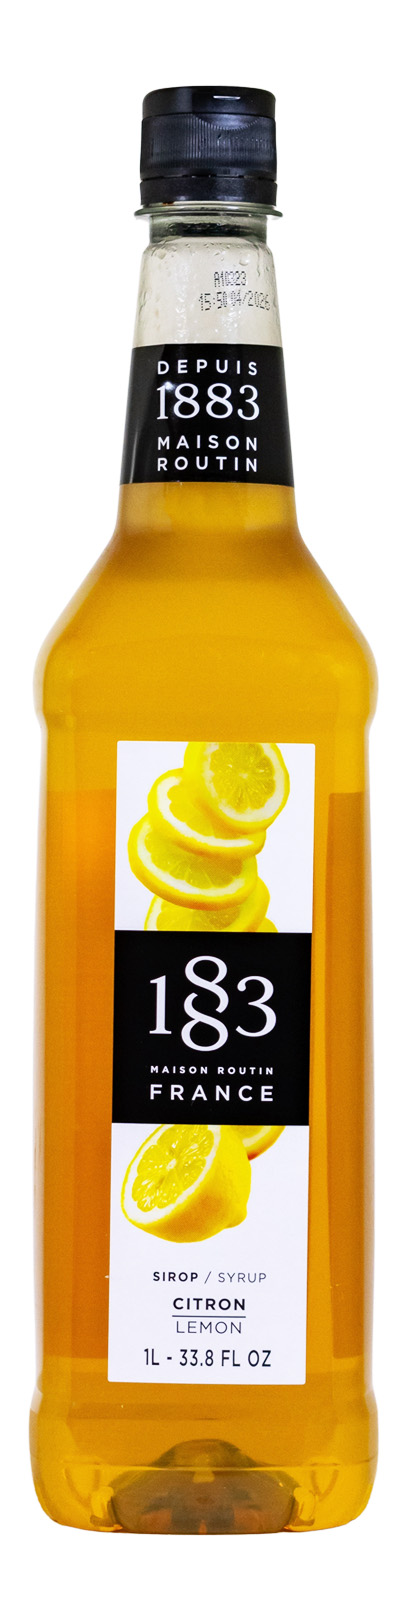 Maison Routin 1883 Zitrone Sirup PET-Flasche - 1 Liter